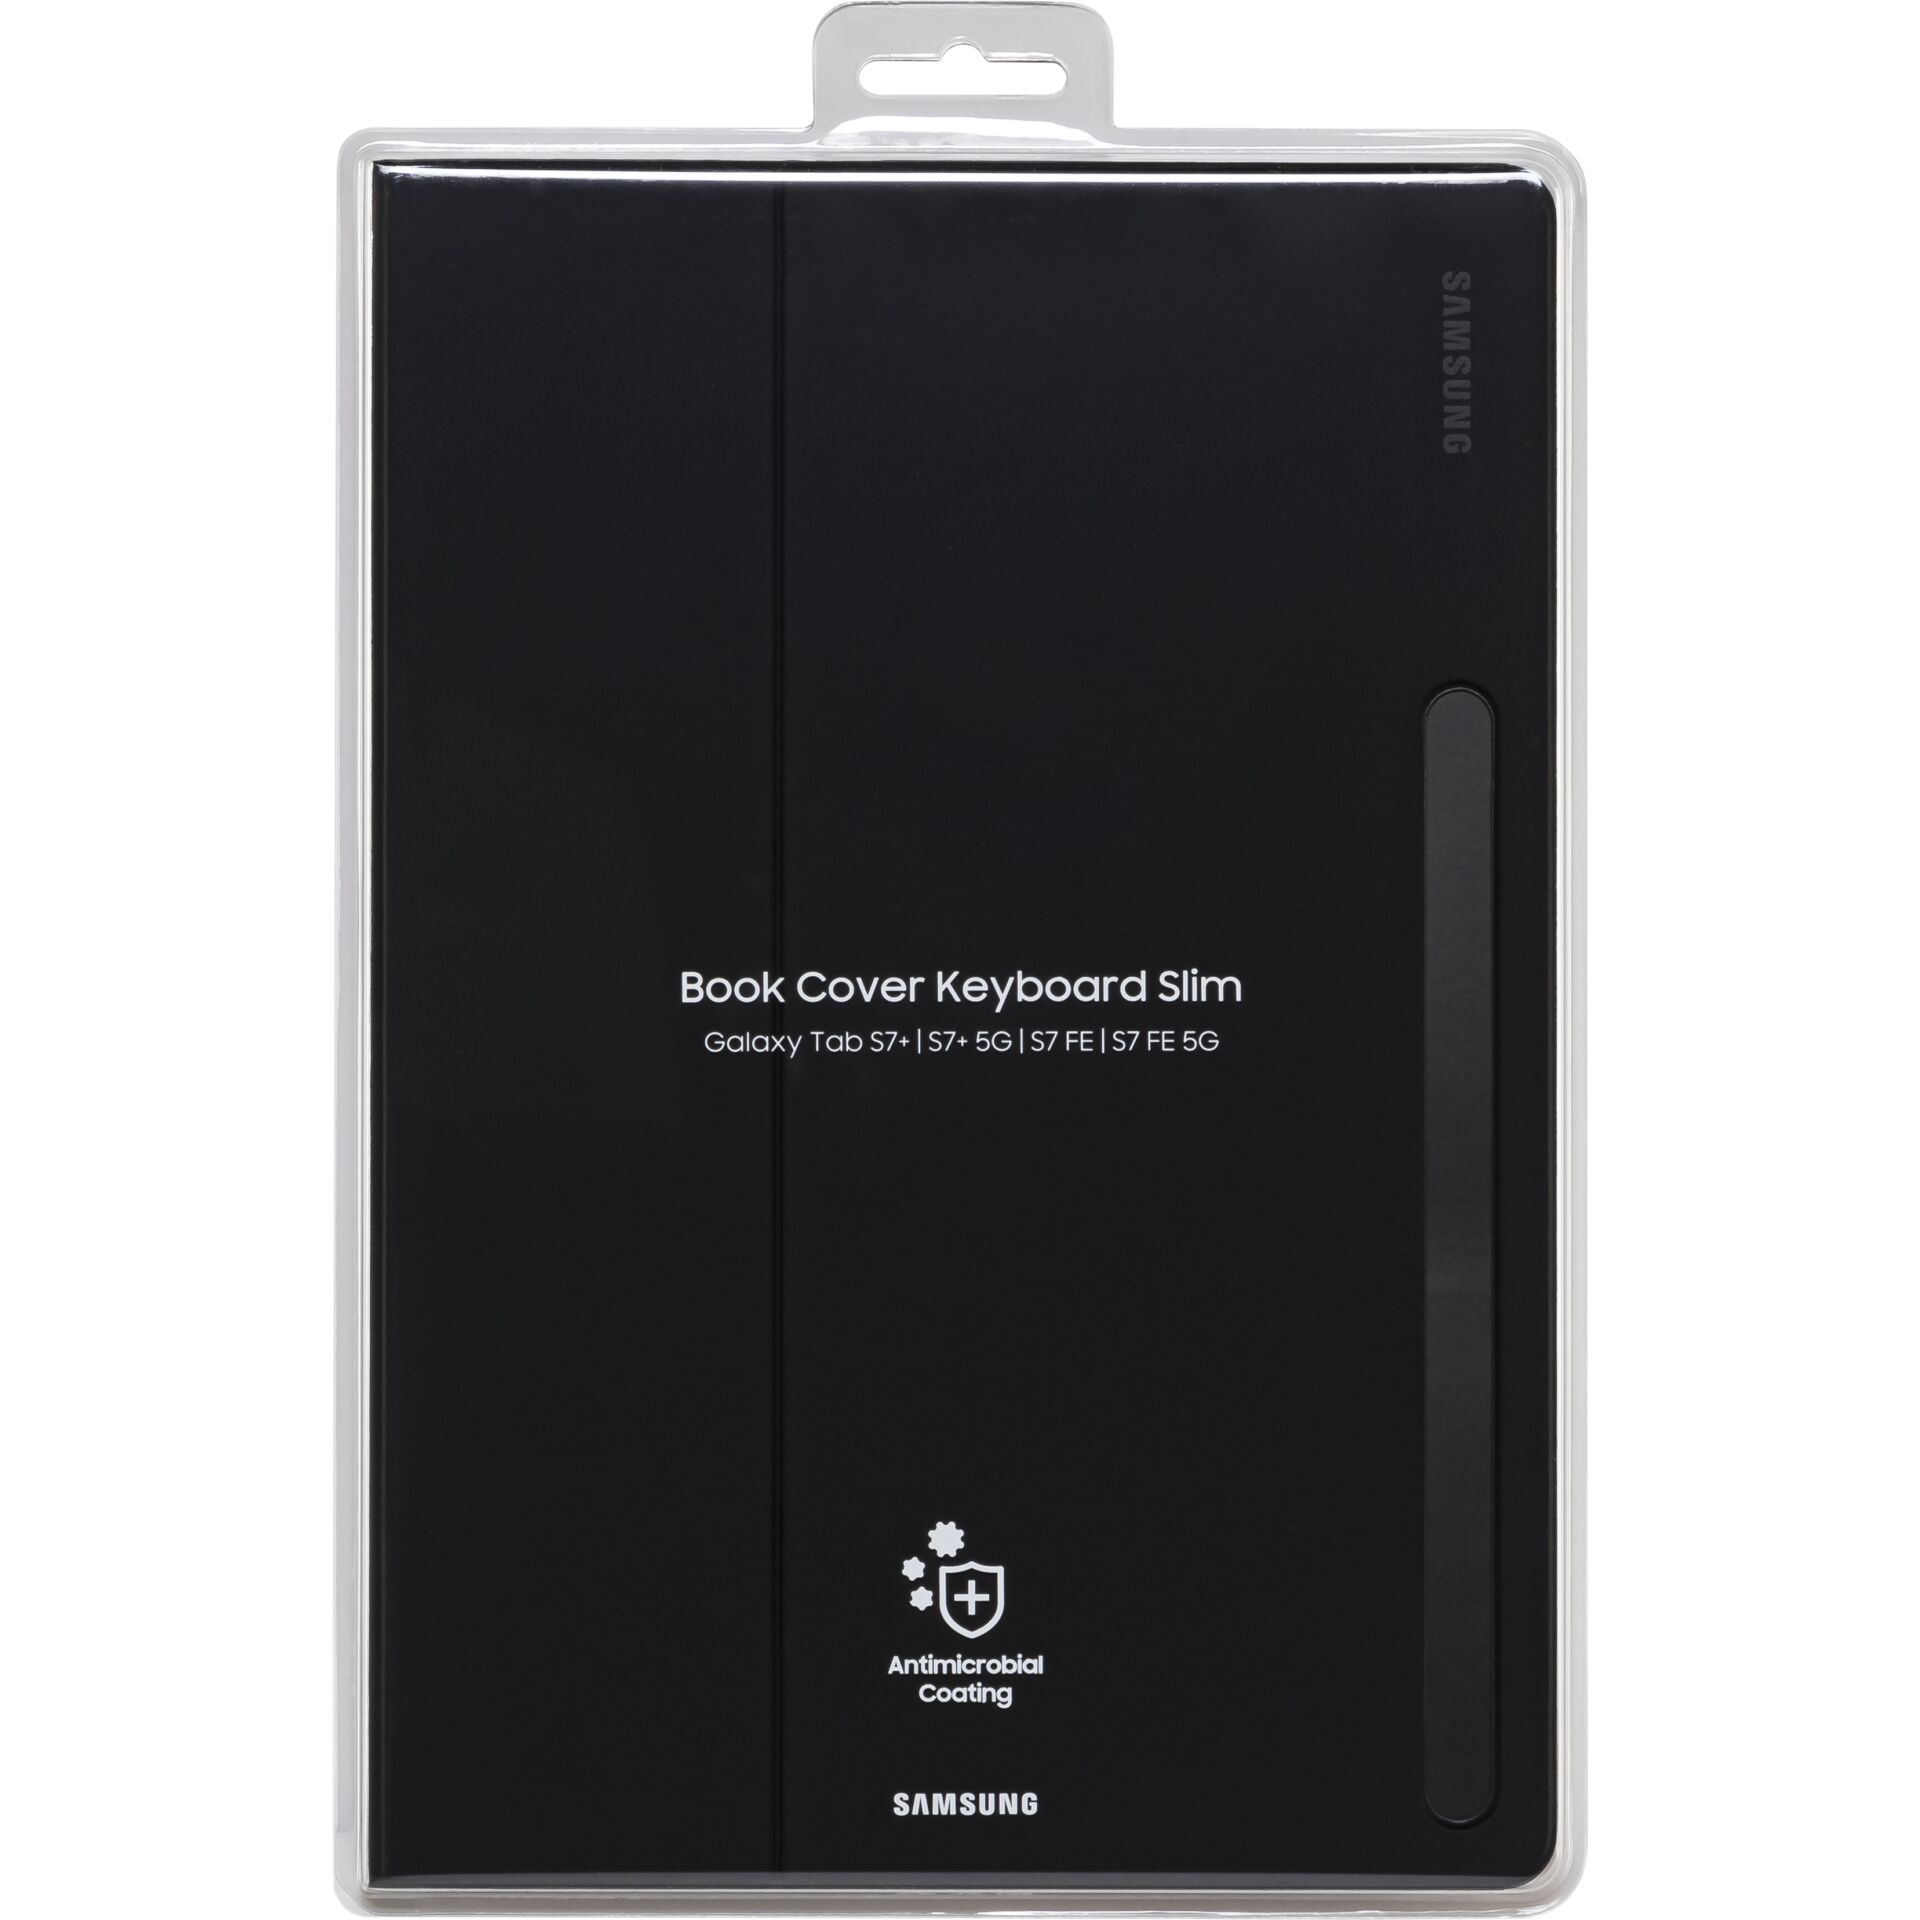 Samsung EJ-DT730 Book Cover Keyboard Slim für Galaxy Tab S7+ / Tab S7 FE, schwarz, DE